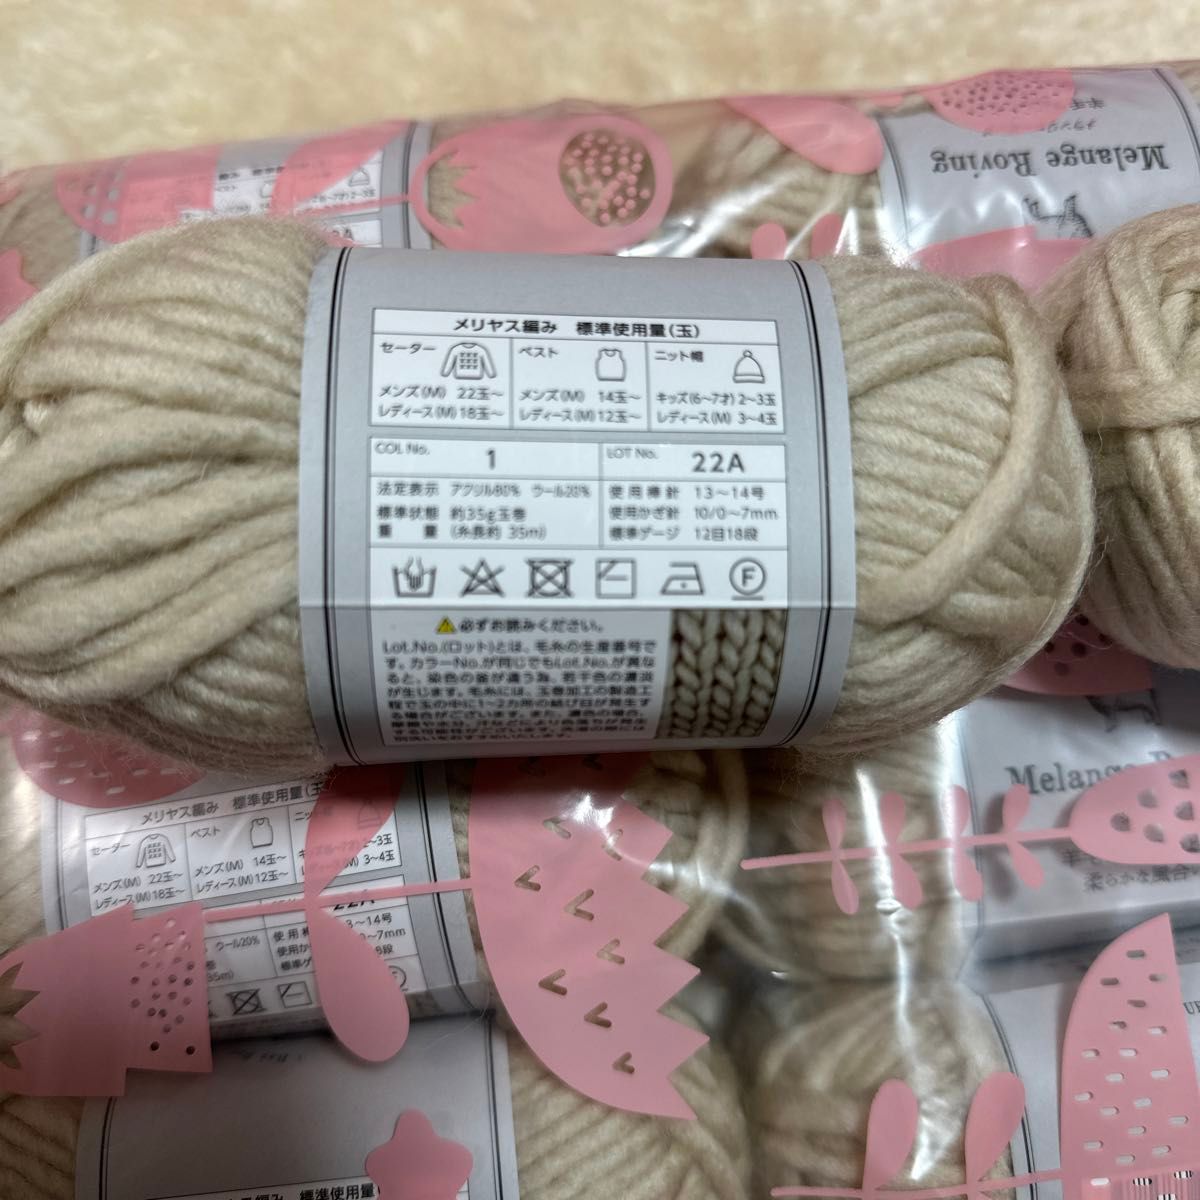 セリア　毛糸　メランジロービング　カラー1番　ロット22A 10玉セット